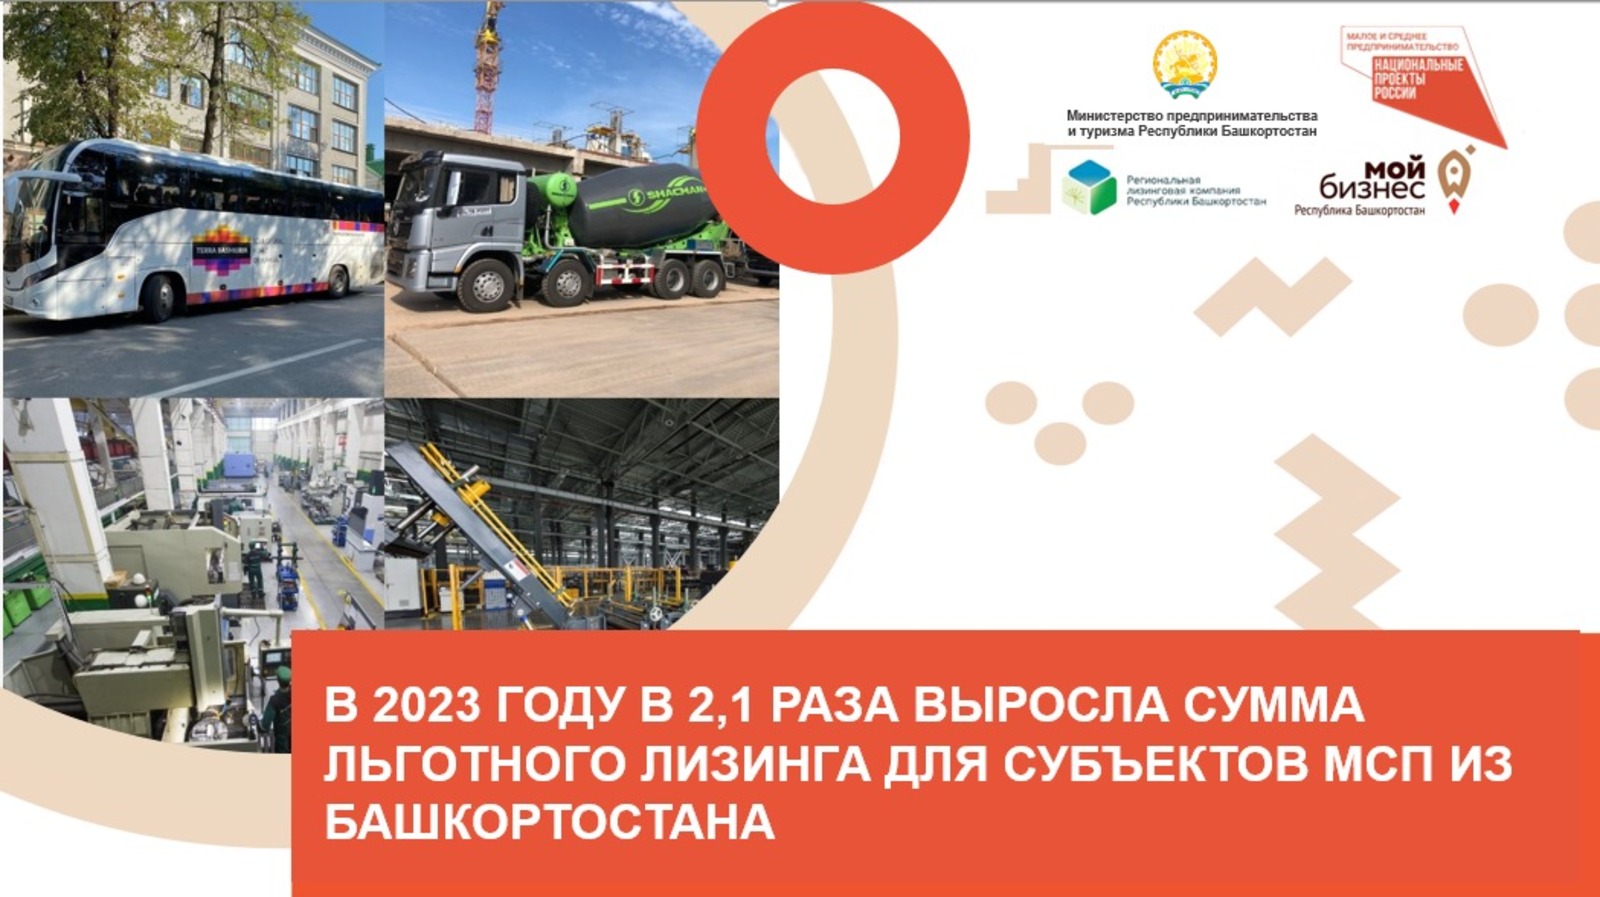 Региональная лизинговая компания профинансировала в 2023 году 60 проектов на 384 млн рублей